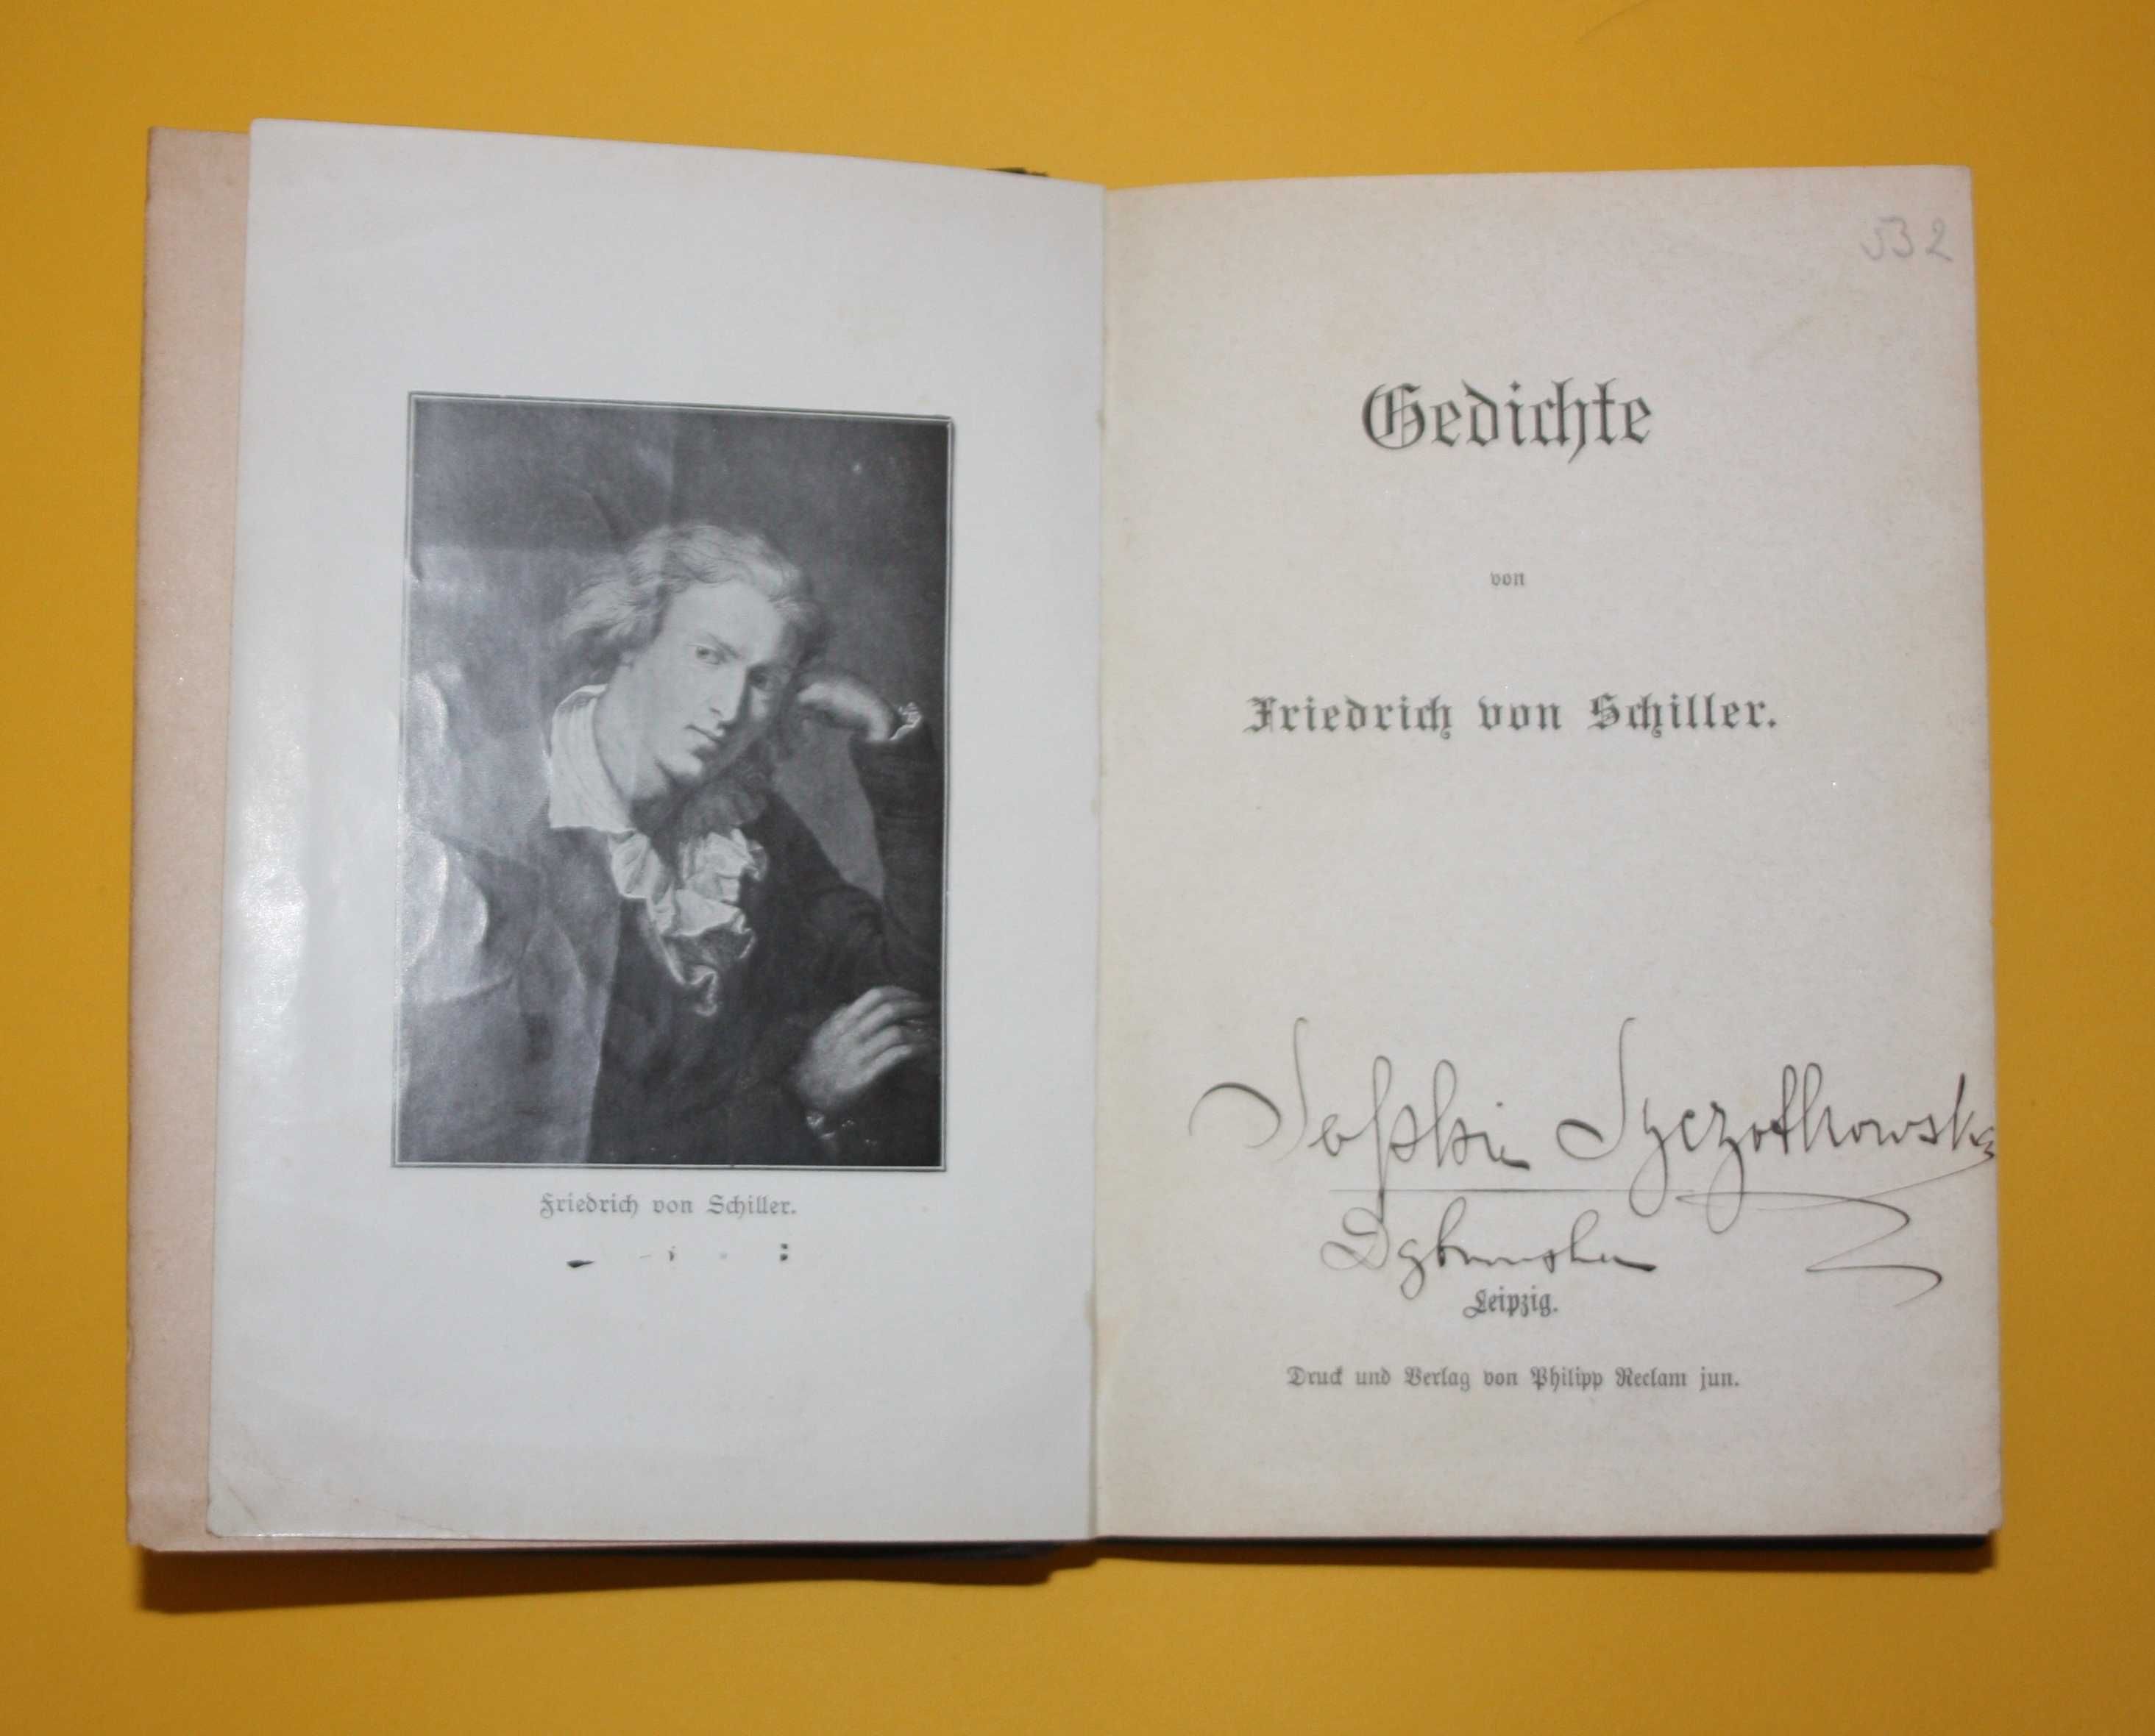 GEDICHTE Friedrich von Schiller